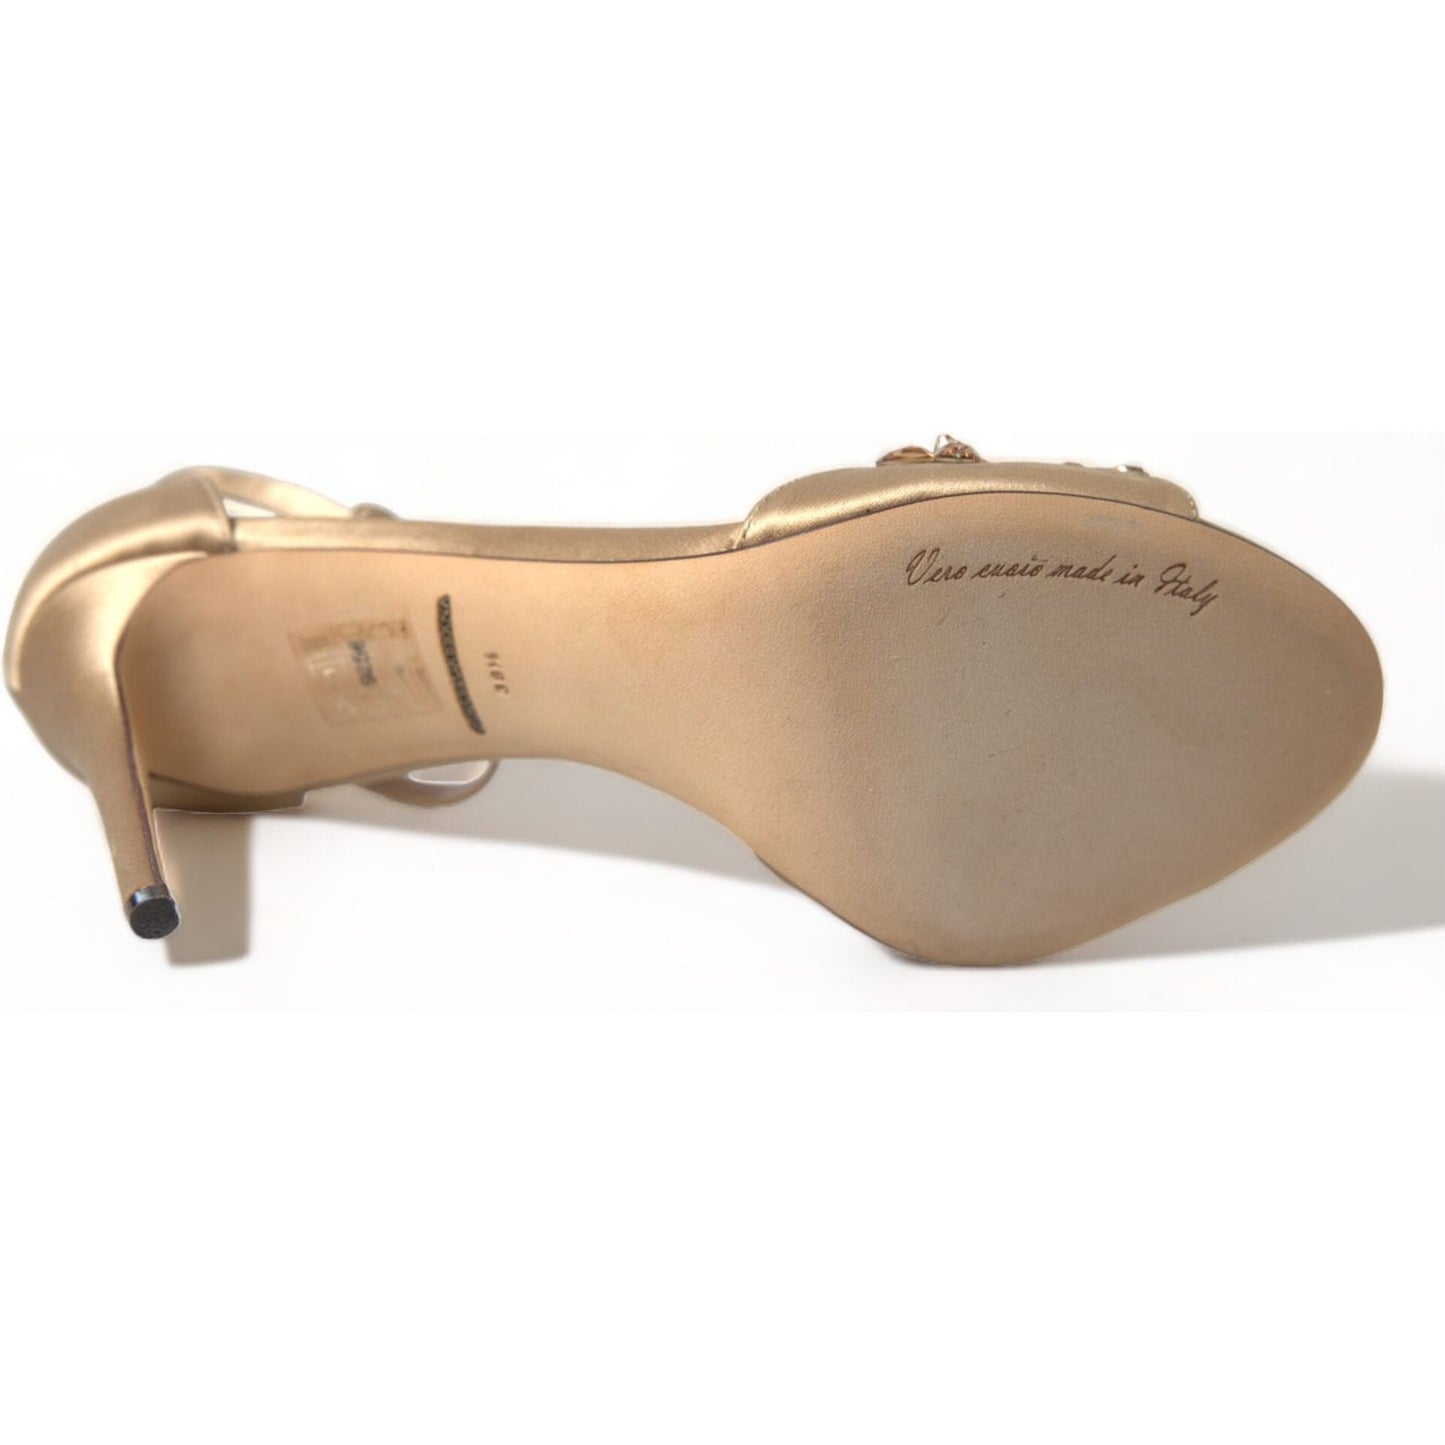 Dolce & Gabbana Crystal Embellished Heel Sandals gold-satin-ankle-strap-crystal-sandals-shoes 465A9646-bg-scaled-d522c659-139.jpg